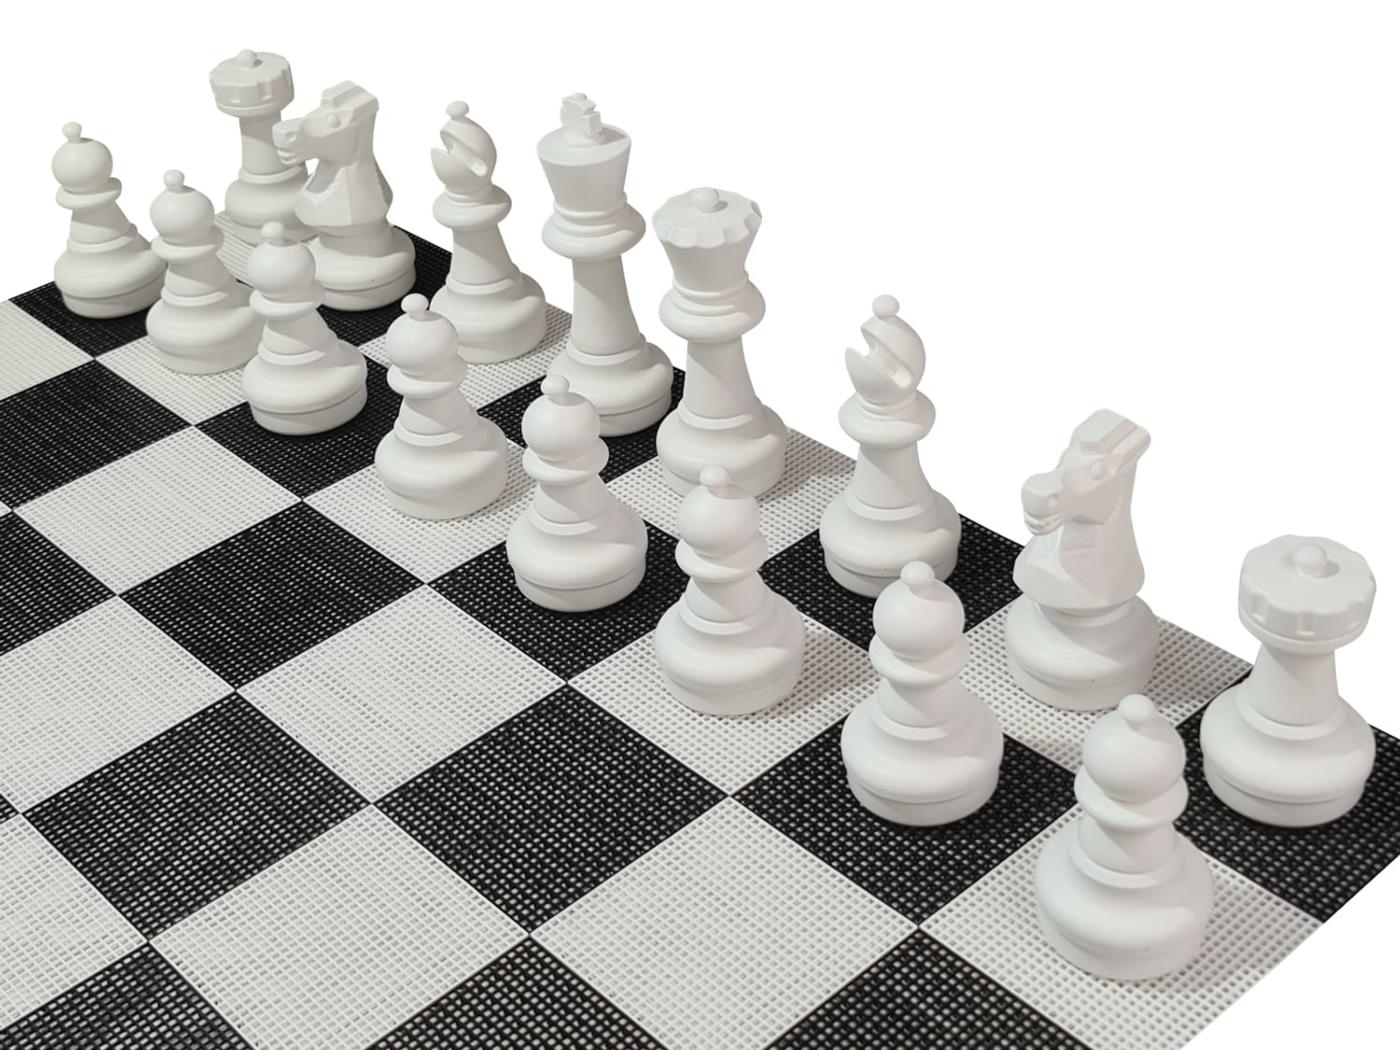 Tabuleiro de Xadrez em 3 Dimensões « Blog de Brinquedo